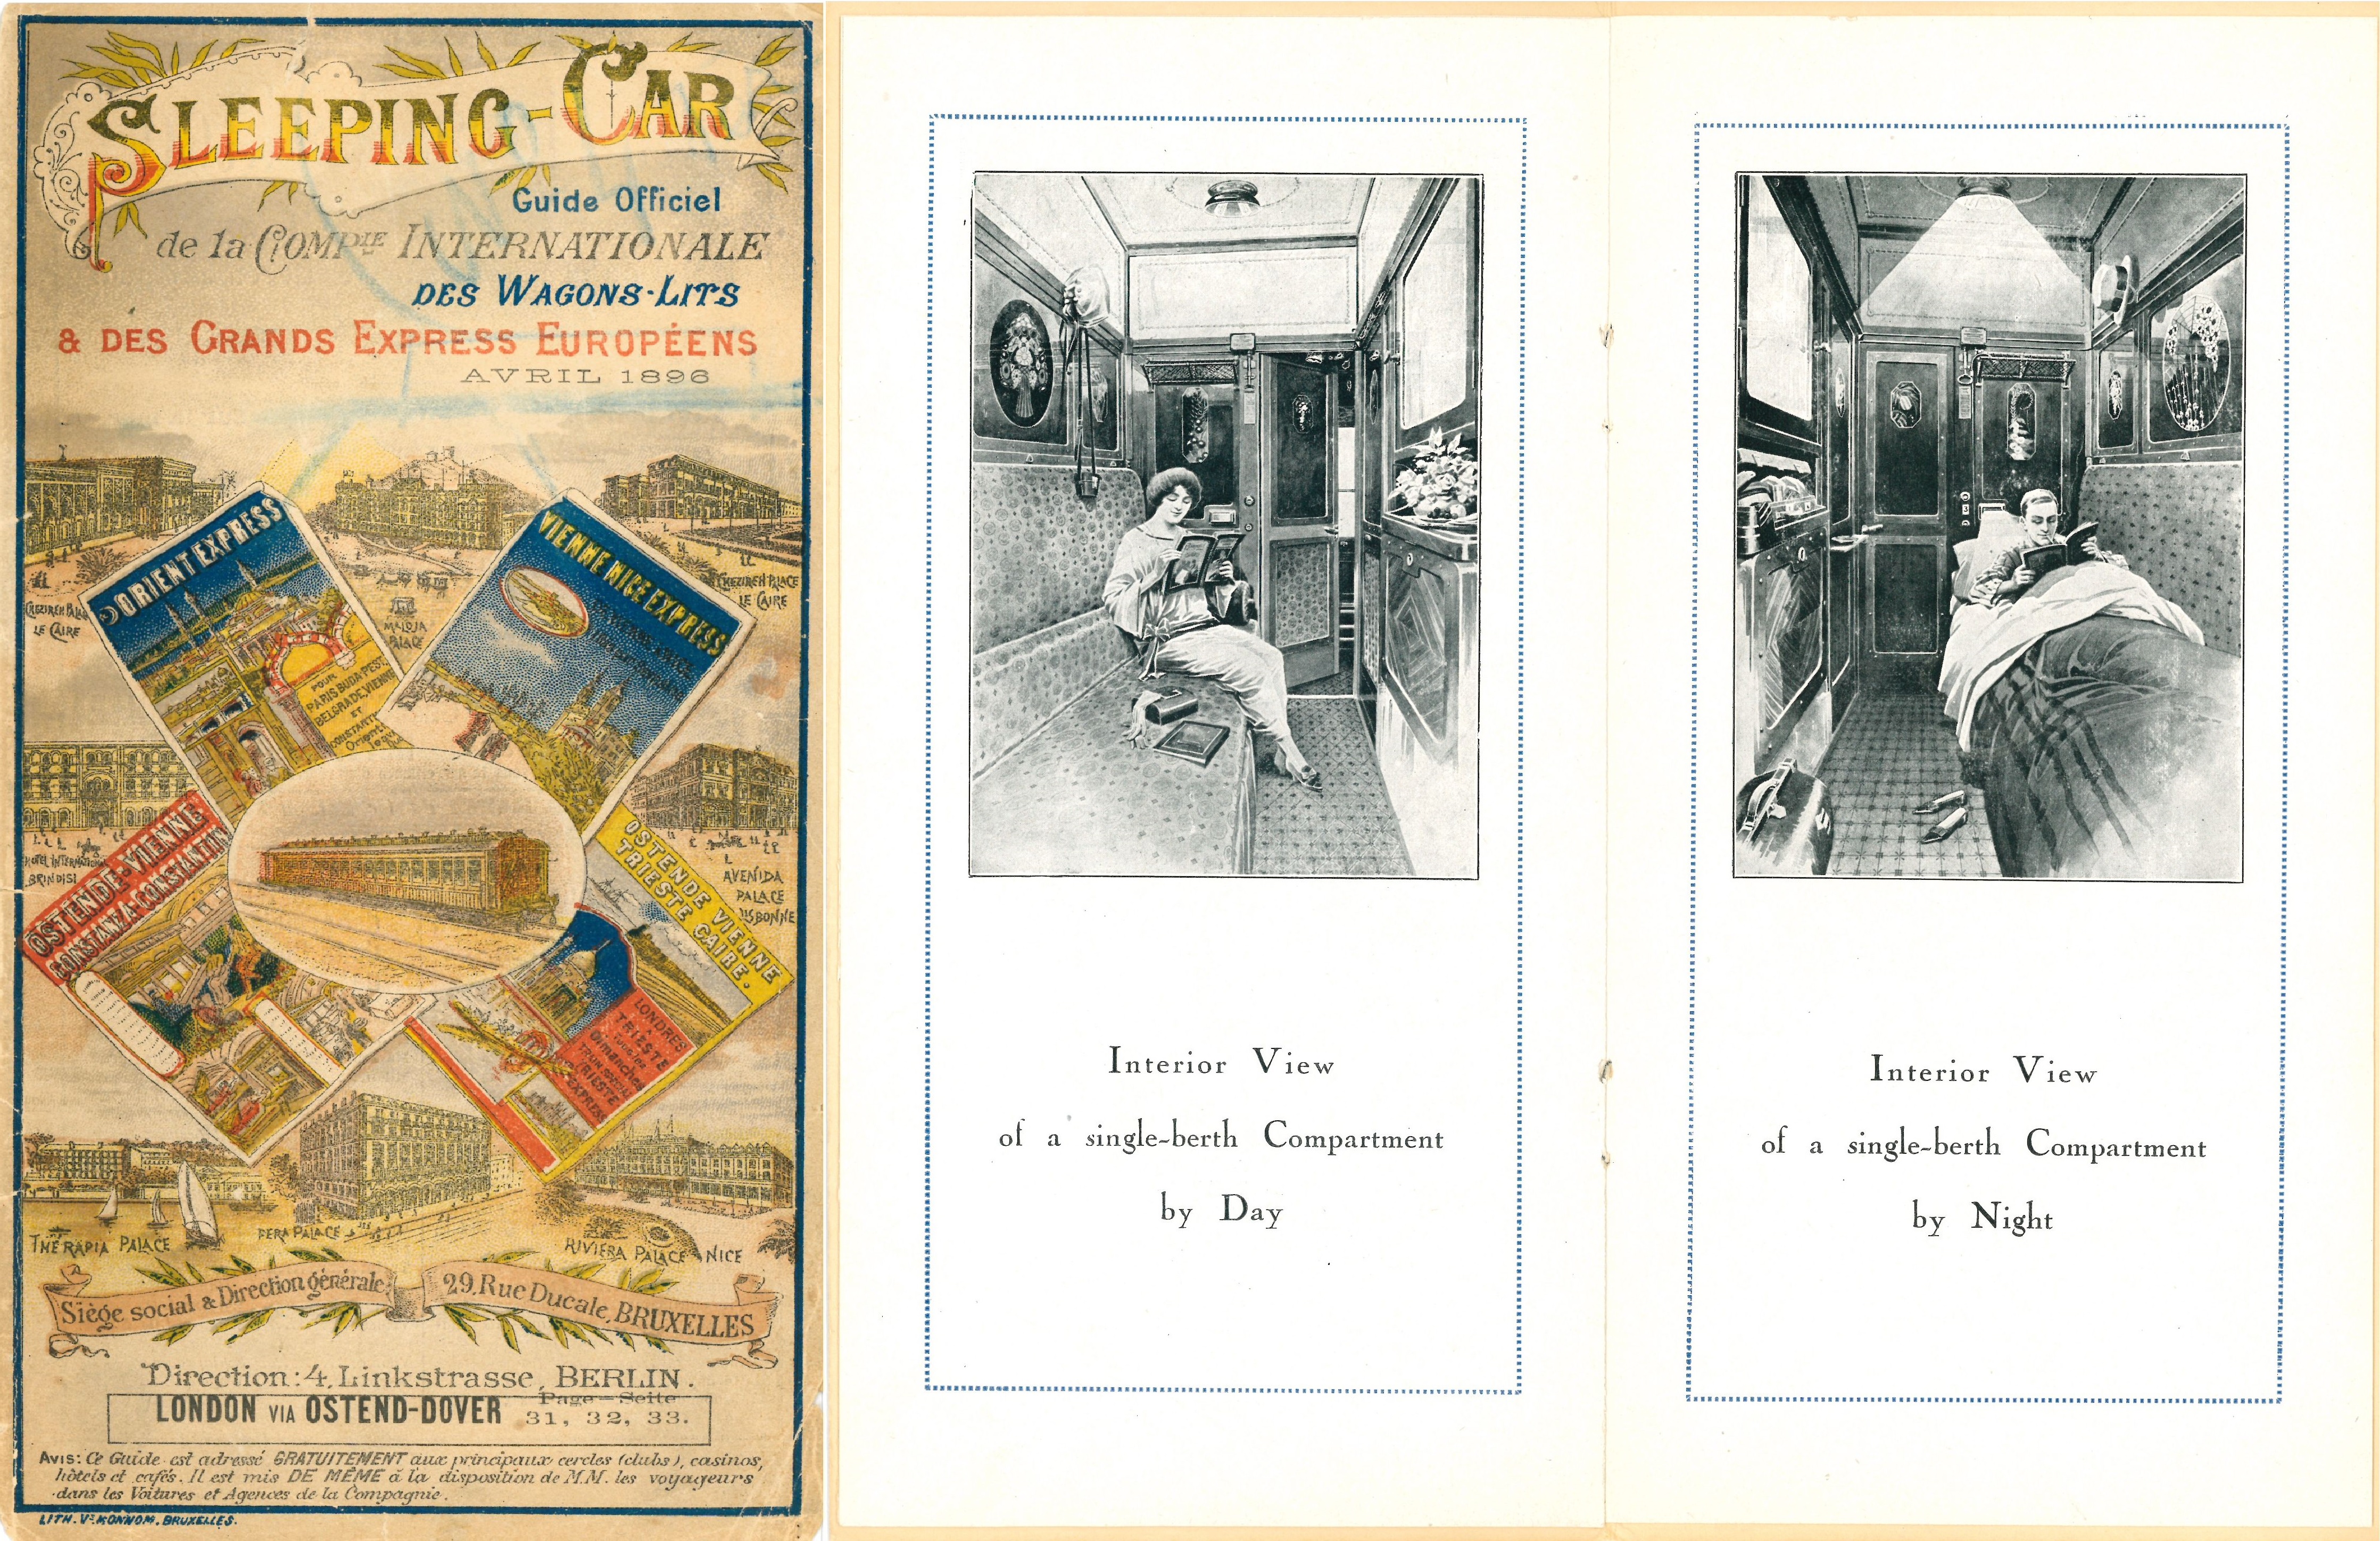 Couverture du Sleeping-Car, Guide officiel de la Compagnie internationale des wagons-lits, avril 1896.  ANMT, Compagnie internationale des wagons-lits et des grands express européens et du tourisme (CIWLT), 2022 9 673.